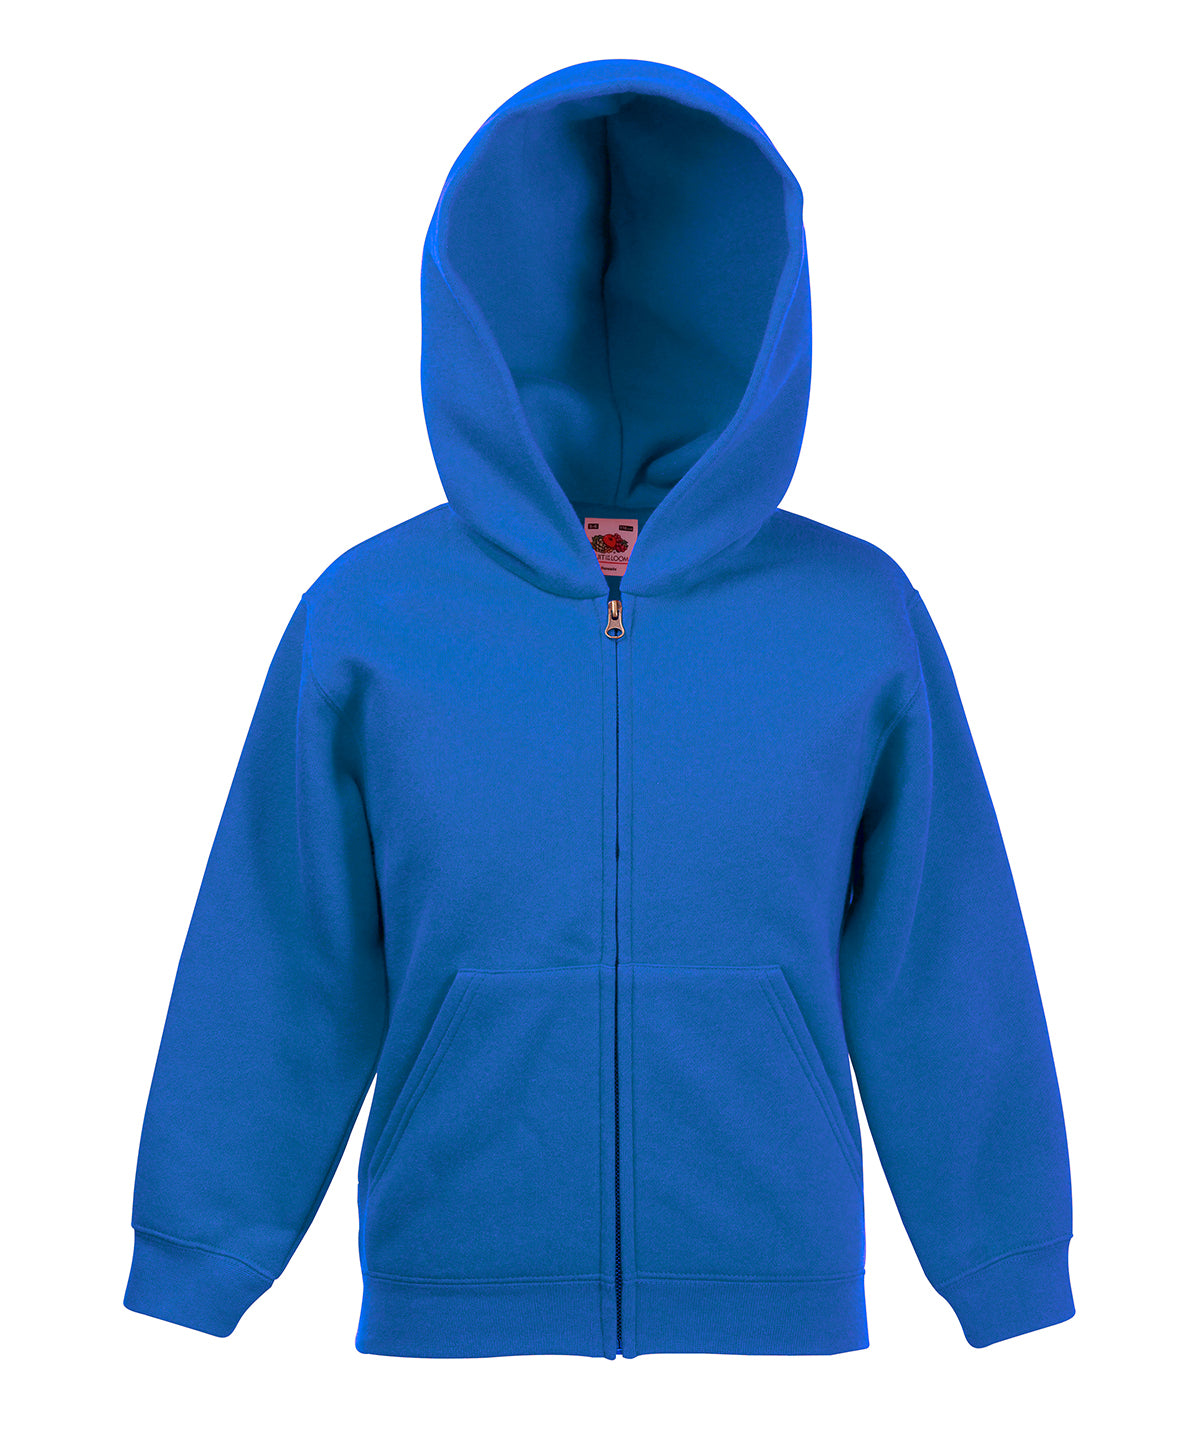 Personalised Hoodies - Black Fruit of the Loom Kids premium hooded sweatshirt jacket